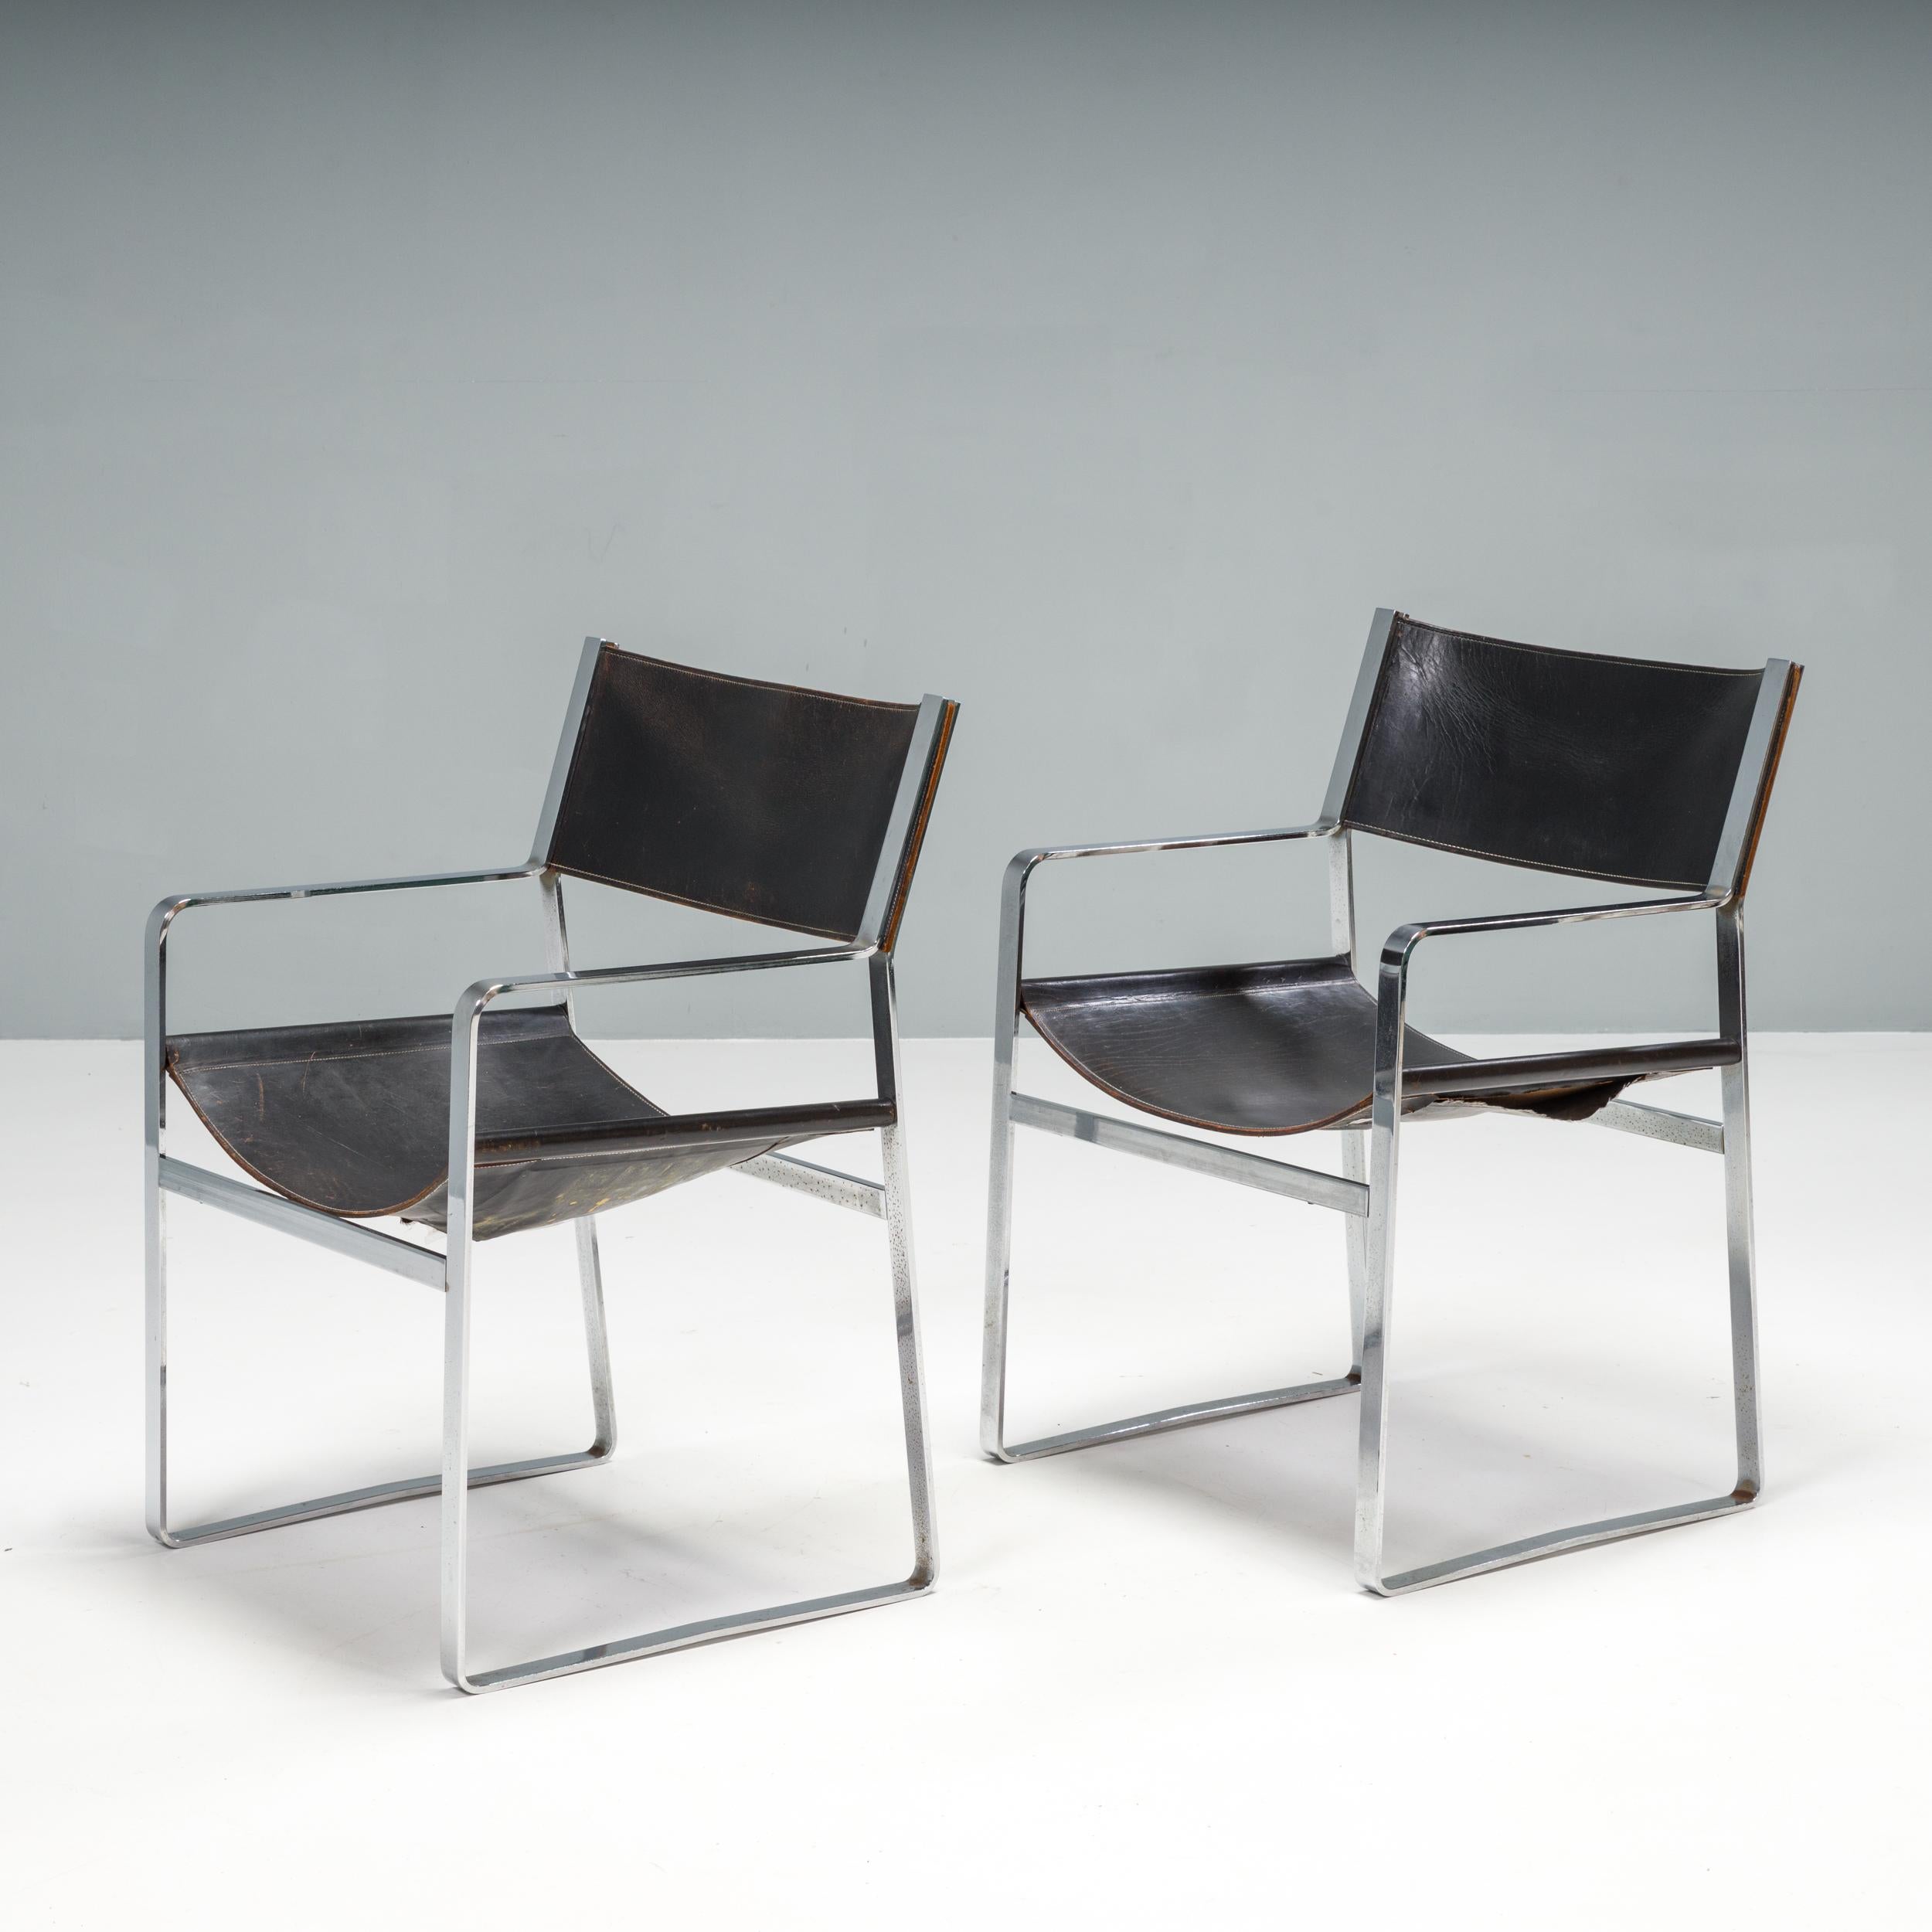 Conçue à l'origine par Hans J. Wegner pour l'exposition de la Guild de Copenhague en 1947, la chaise JH-813 a d'abord été conçue pour être fabriquée en bois. Ce n'est que dans les années 1970 que les chaises ont commencé à être fabriquées par